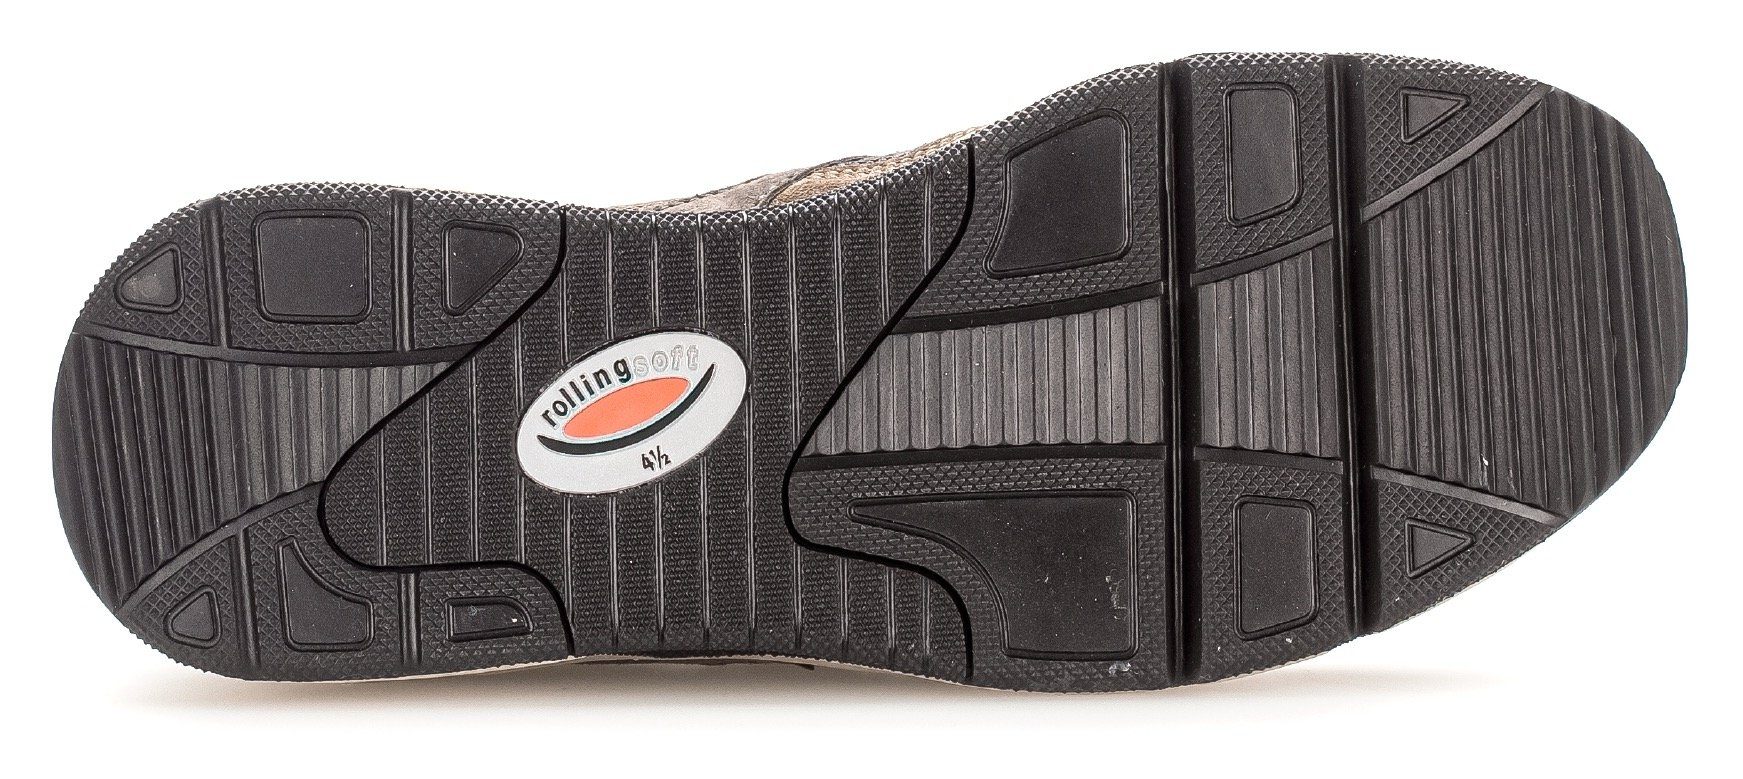 Gabor Rollingsoft Keilsneaker mit wallaby/braun OPTIFIT-Wechselfußbett kombi